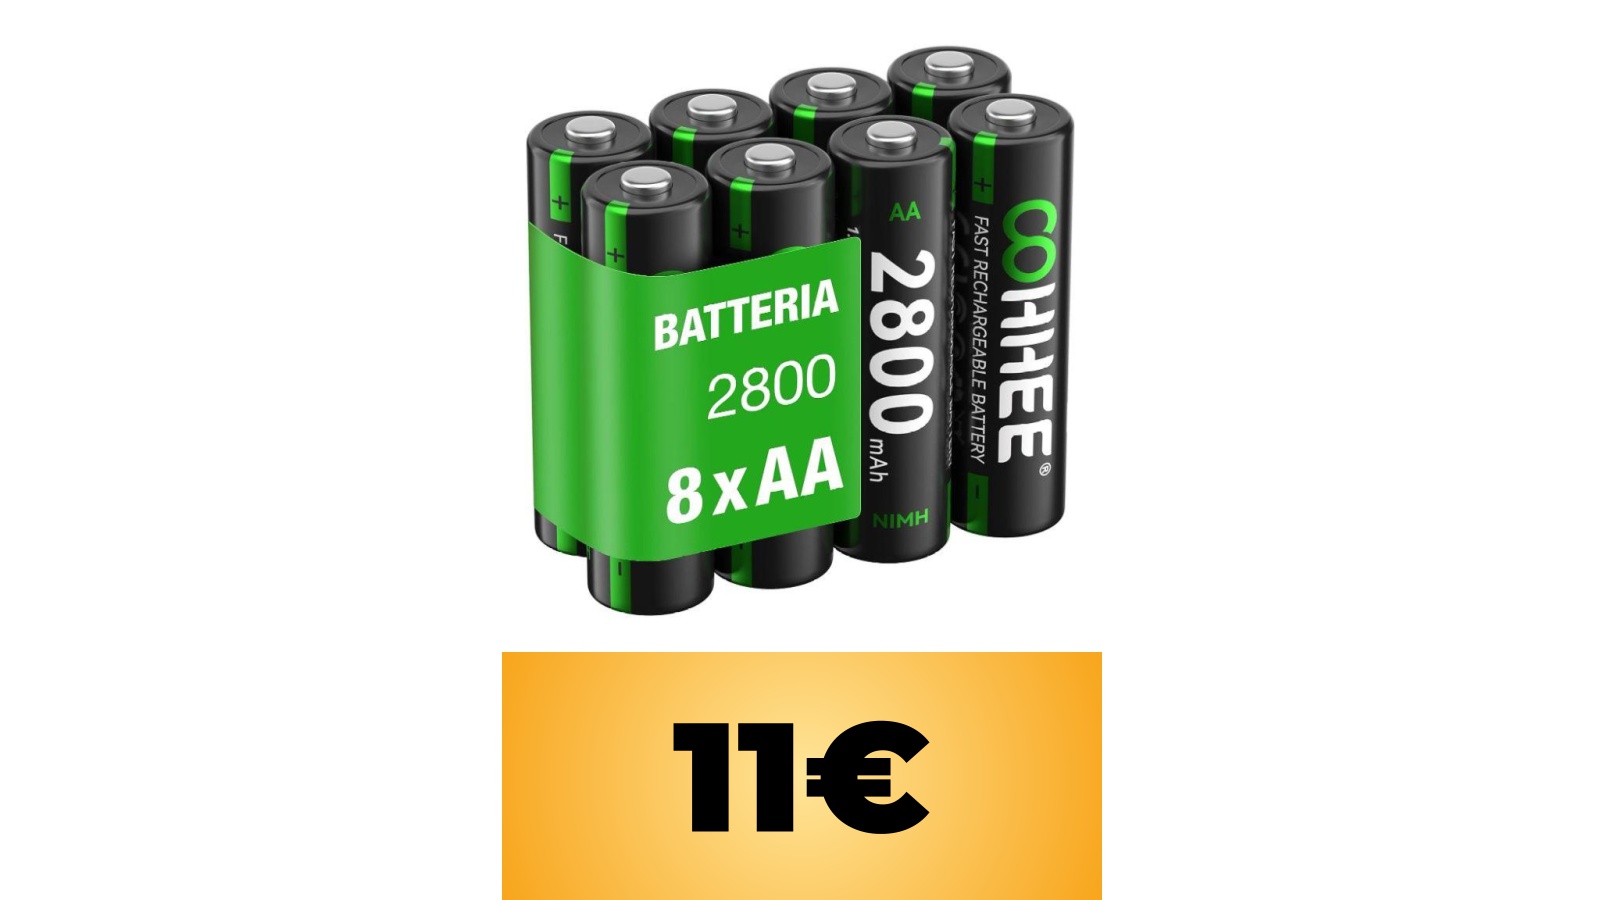 Batterie AA ricaricabili, pacco da 8 in sconto con un coupon tramite l'offerta di Amazon Italia